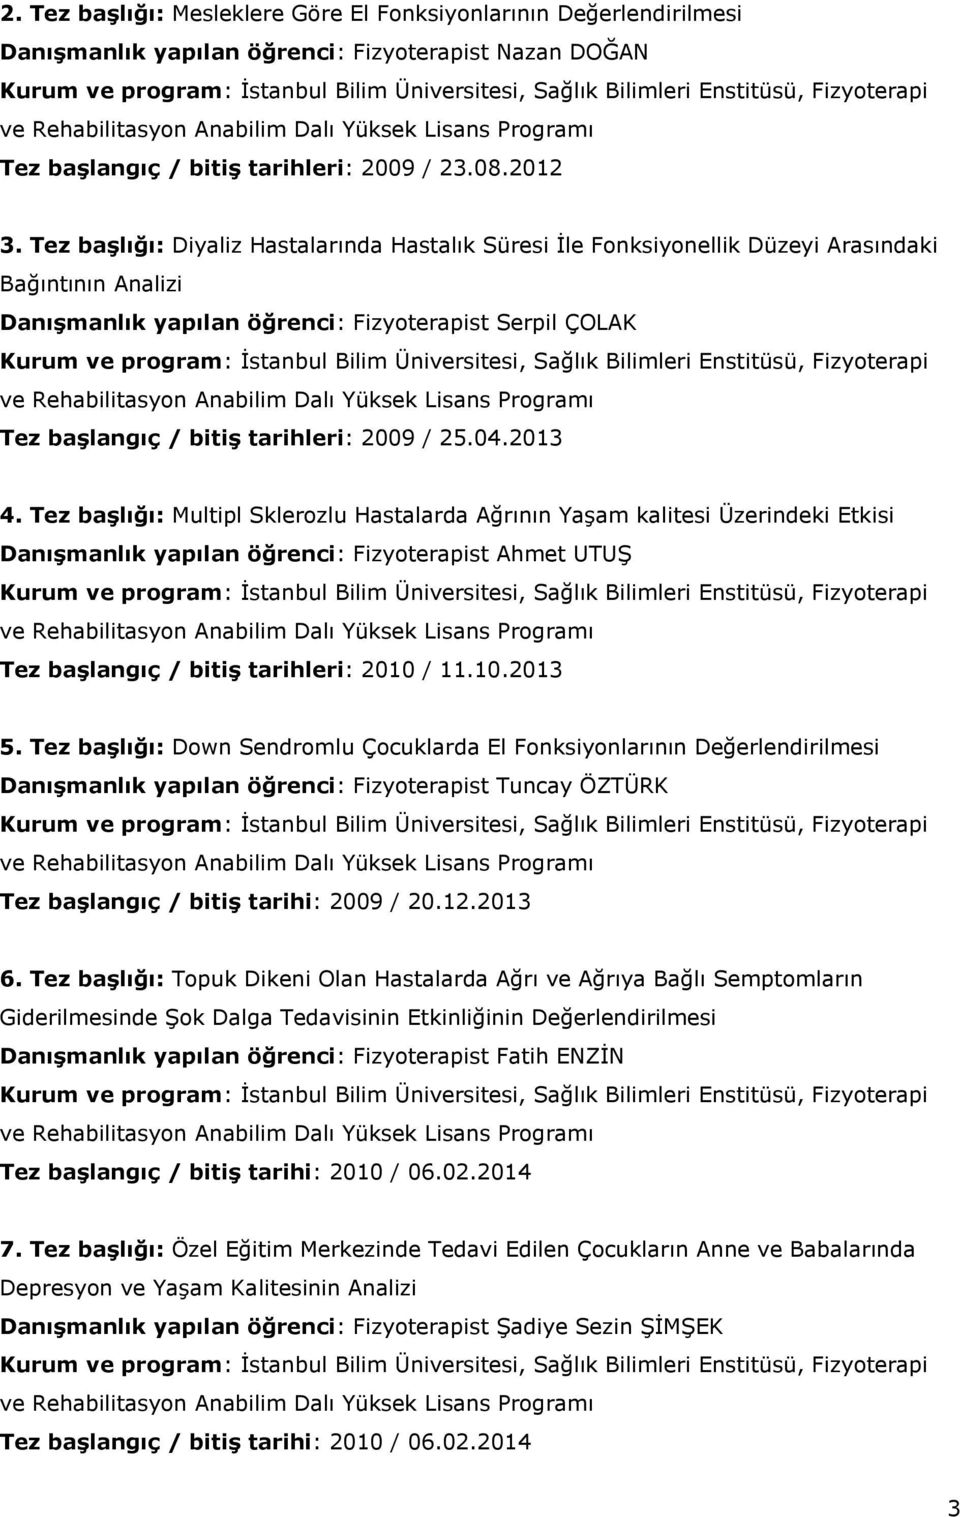 Tez başlığı: Diyaliz Hastalarında Hastalık Süresi İle Fonksiyonellik Düzeyi Arasındaki Bağıntının Analizi Danışmanlık yapılan öğrenci: Fizyoterapist Serpil ÇOLAK Kurum ve program: İstanbul Bilim